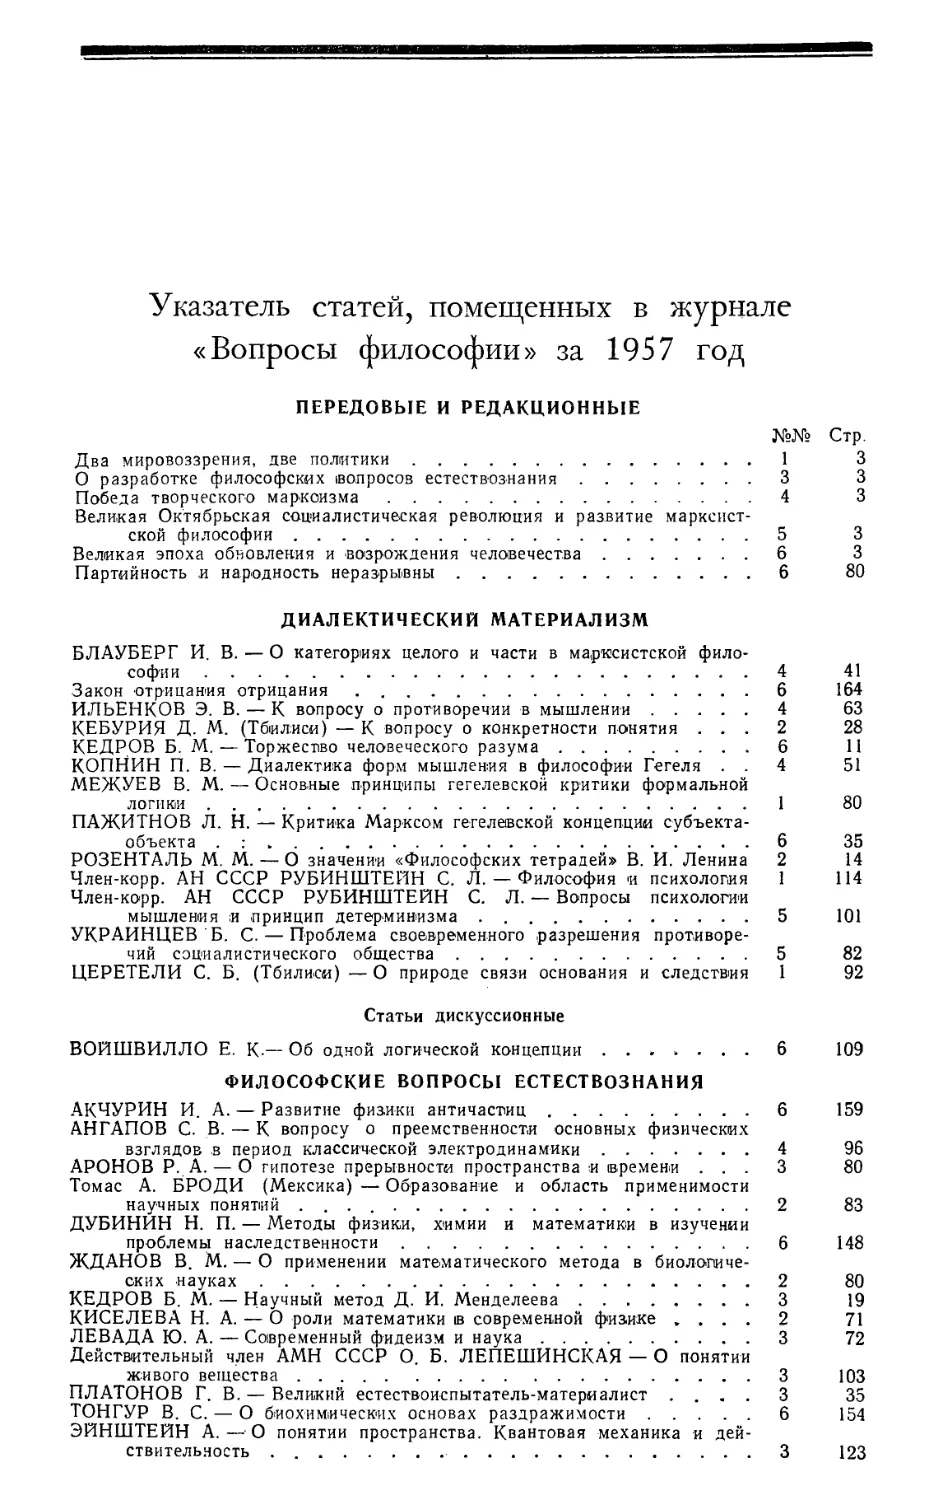 Указатель статей, помещенных в журнале «Вопросы философии» за 1957 год